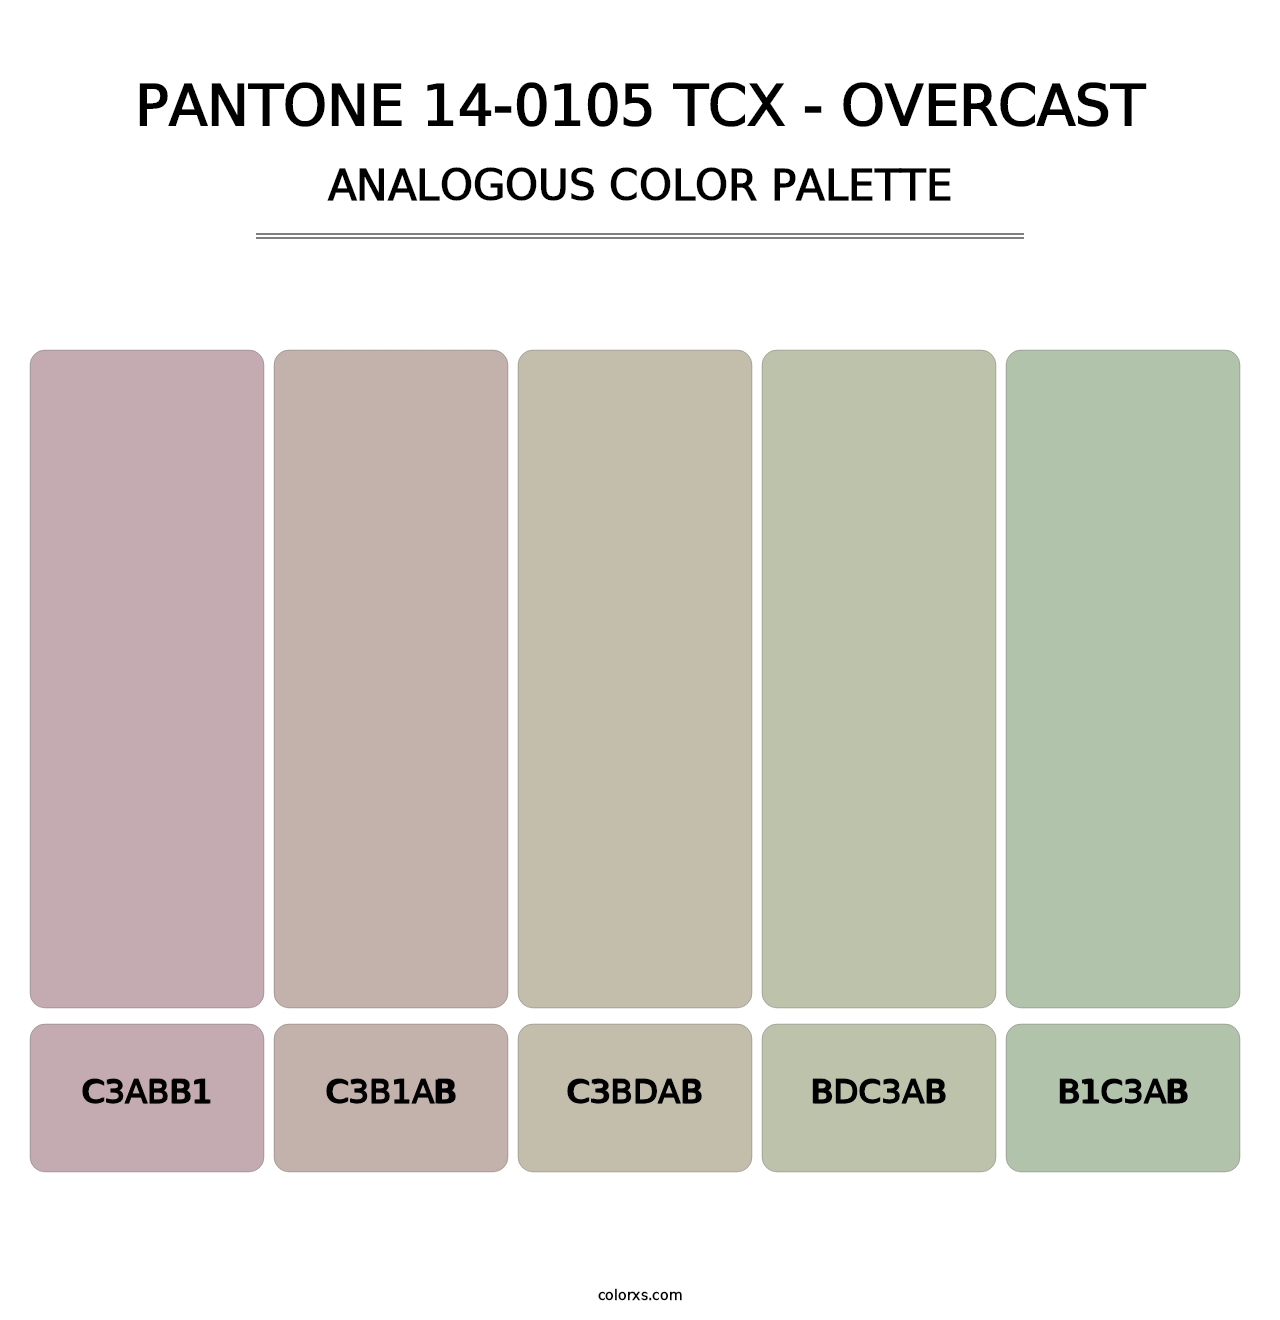 PANTONE 14-0105 TCX - Overcast - Analogous Color Palette